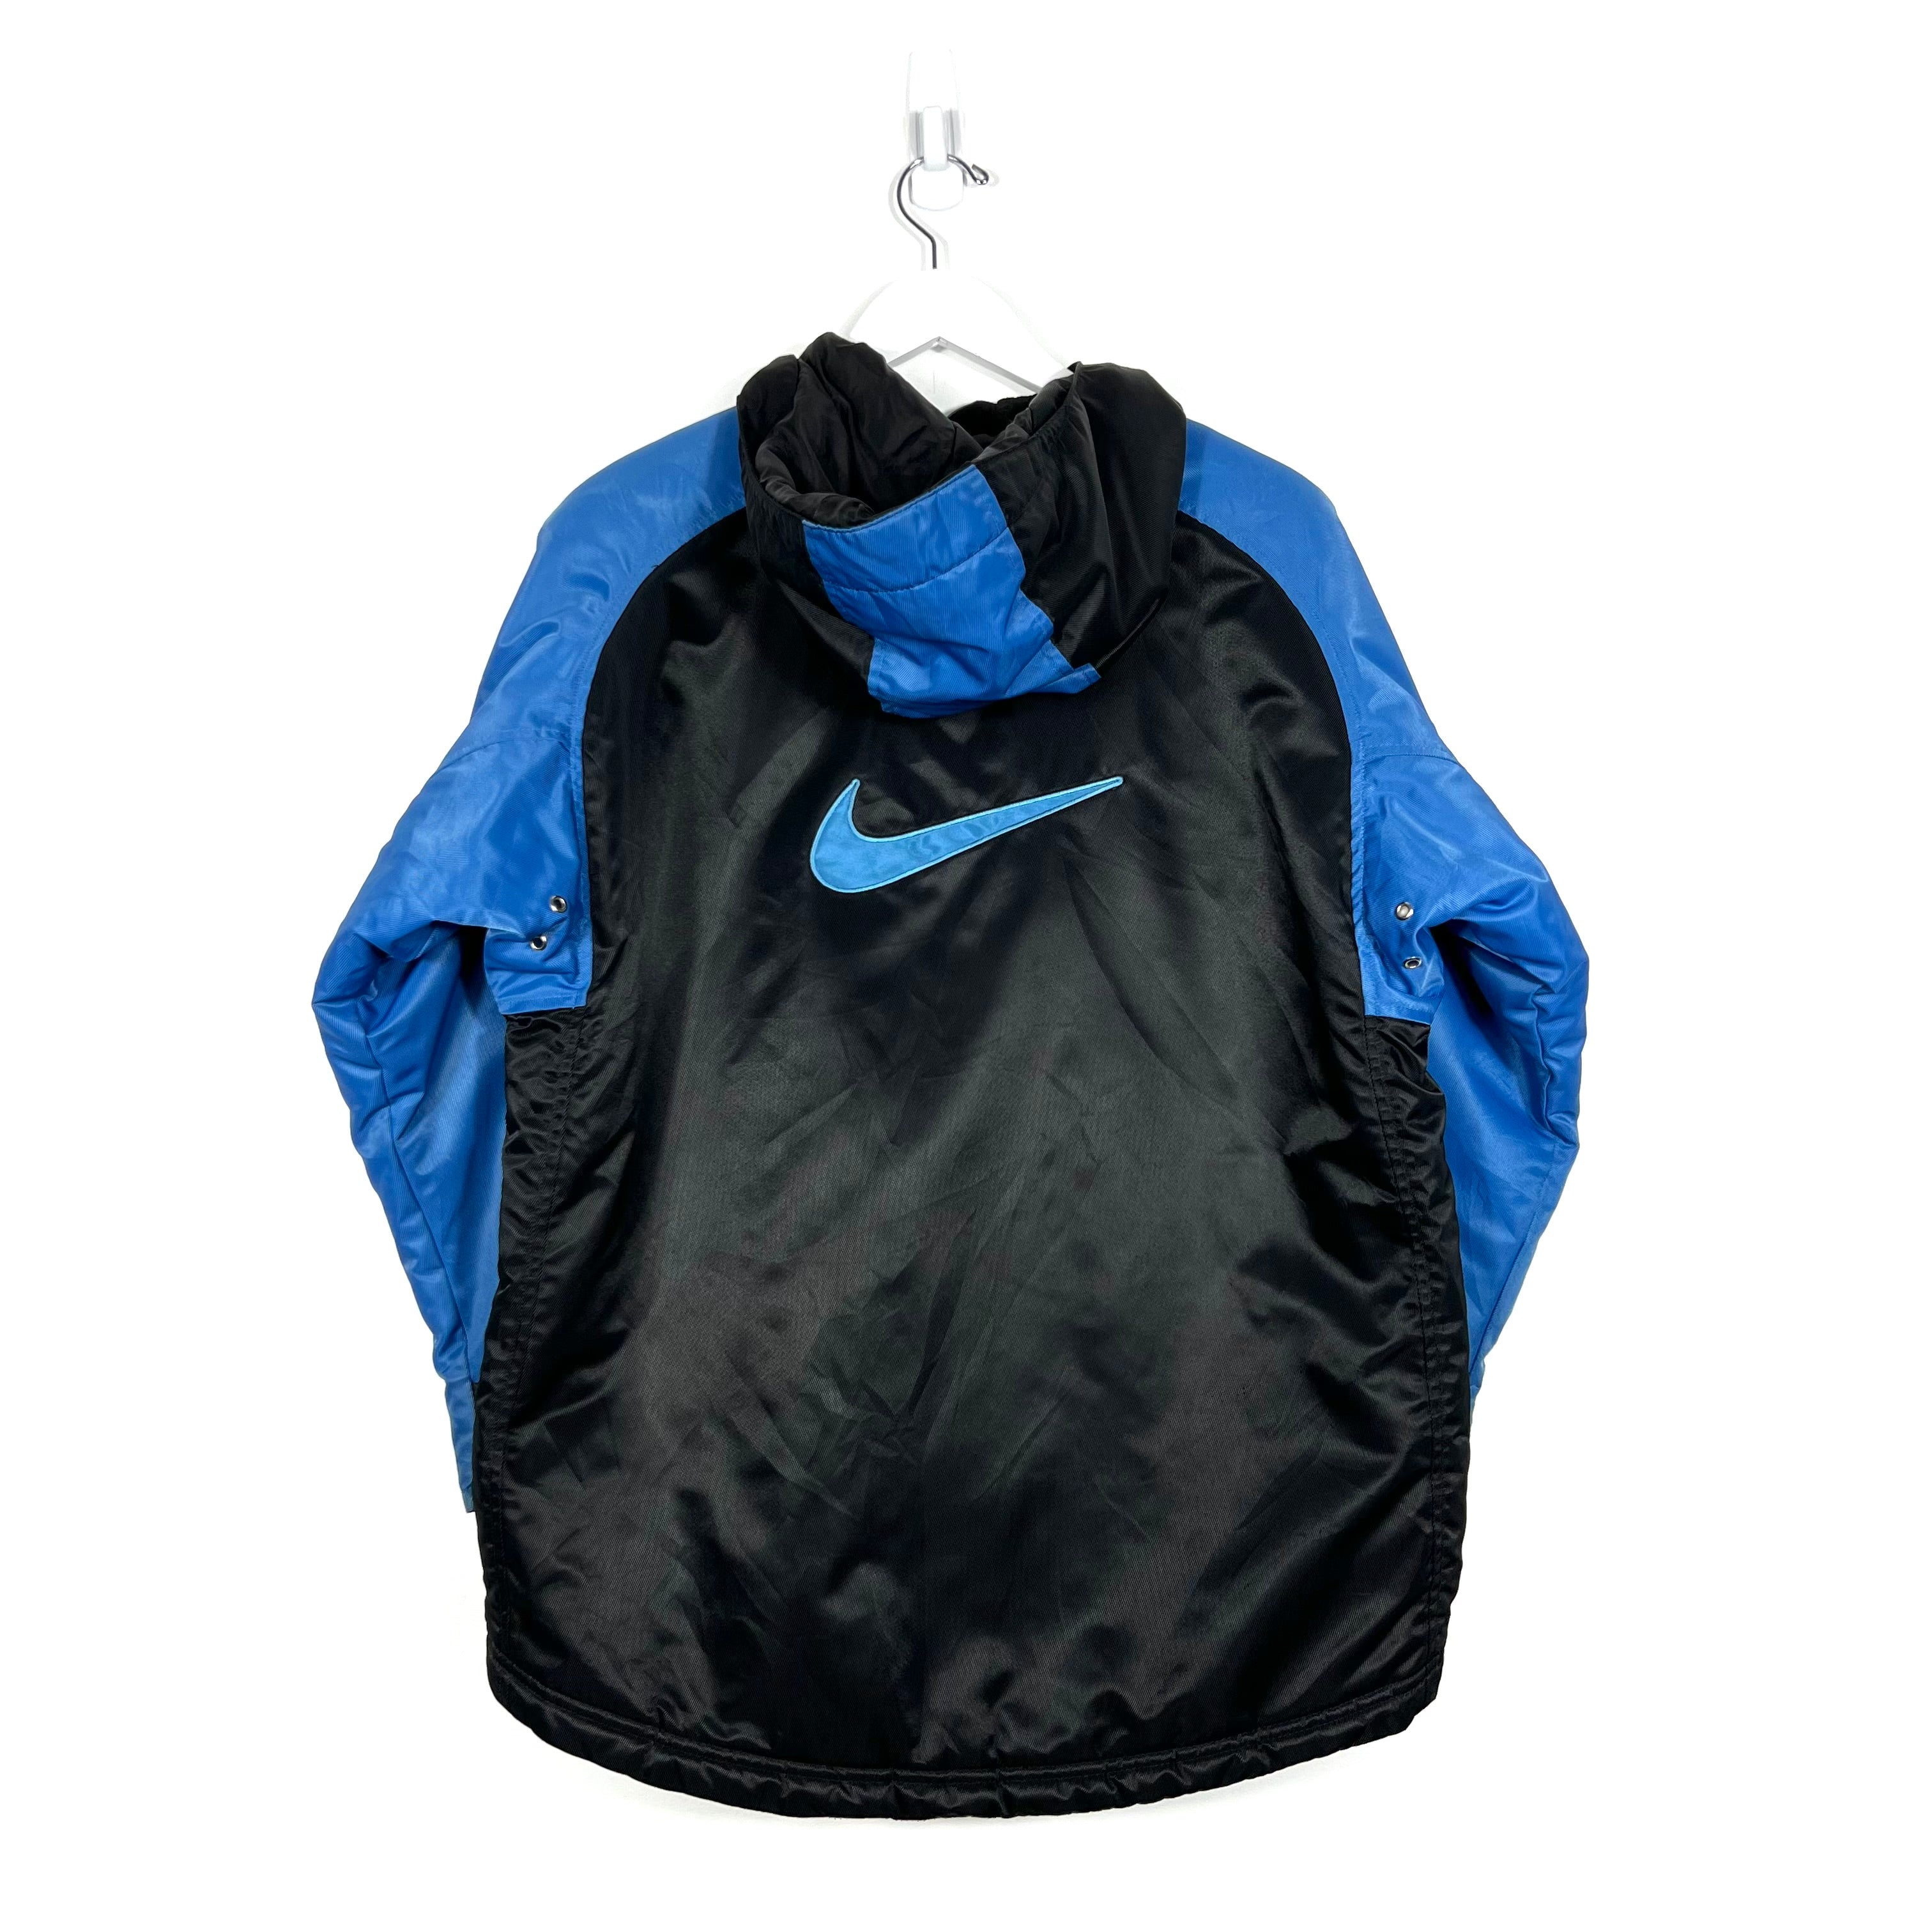 Vintage Nike Big Swoosh Insulated Jacket - Women's Large